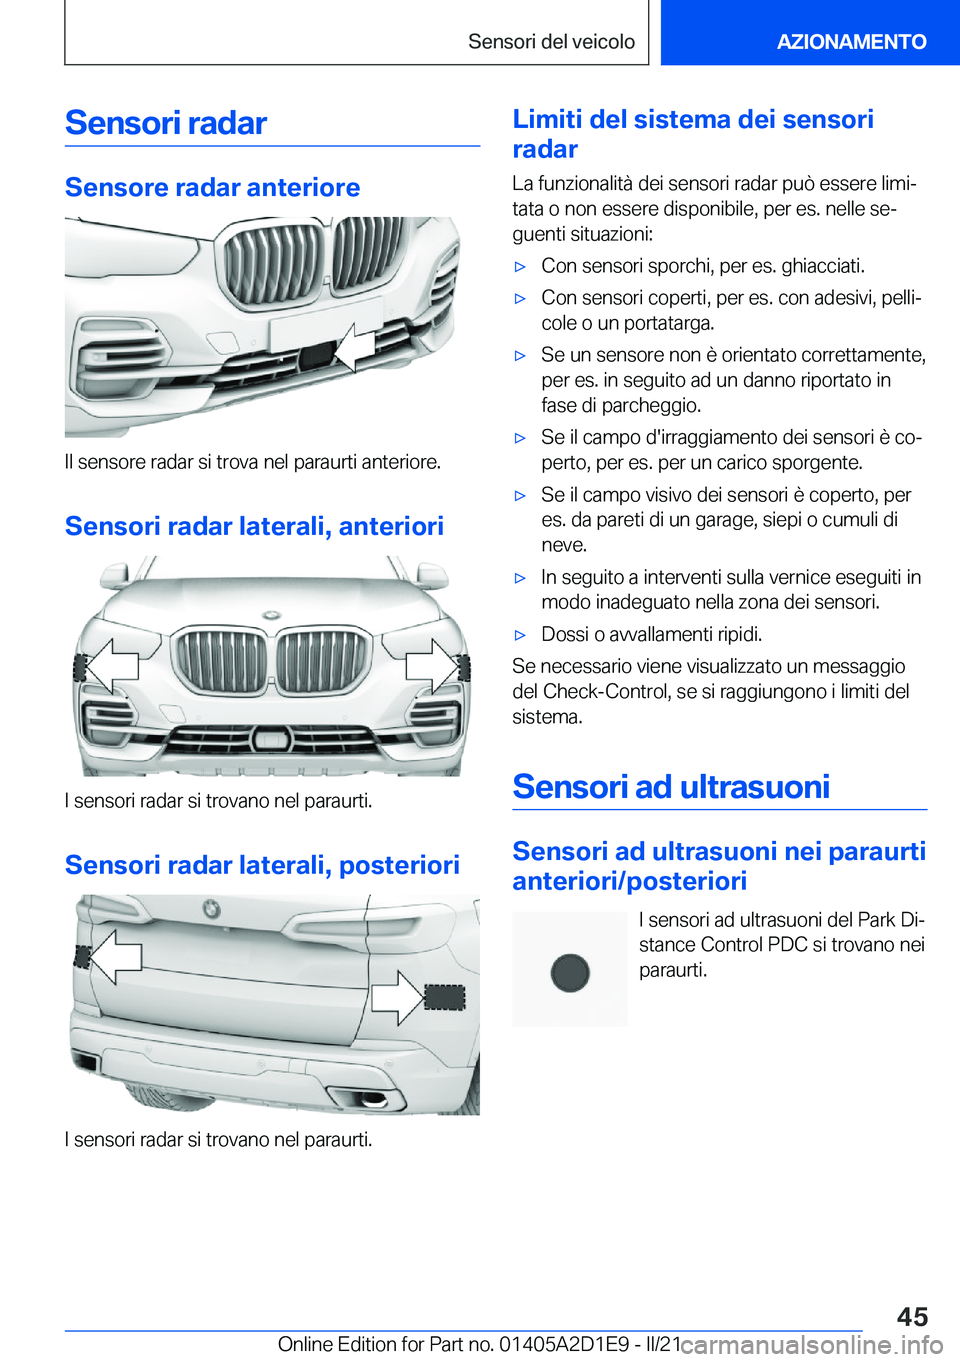 BMW X6 M 2021  Libretti Di Uso E manutenzione (in Italian) �S�e�n�s�o�r�i��r�a�d�a�r
�S�e�n�s�o�r�e��r�a�d�a�r��a�n�t�e�r�i�o�r�e
�I�l��s�e�n�s�o�r�e��r�a�d�a�r��s�i��t�r�o�v�a��n�e�l��p�a�r�a�u�r�t�i��a�n�t�e�r�i�o�r�e�.�S�e�n�s�o�r�i��r�a�d�a�r�